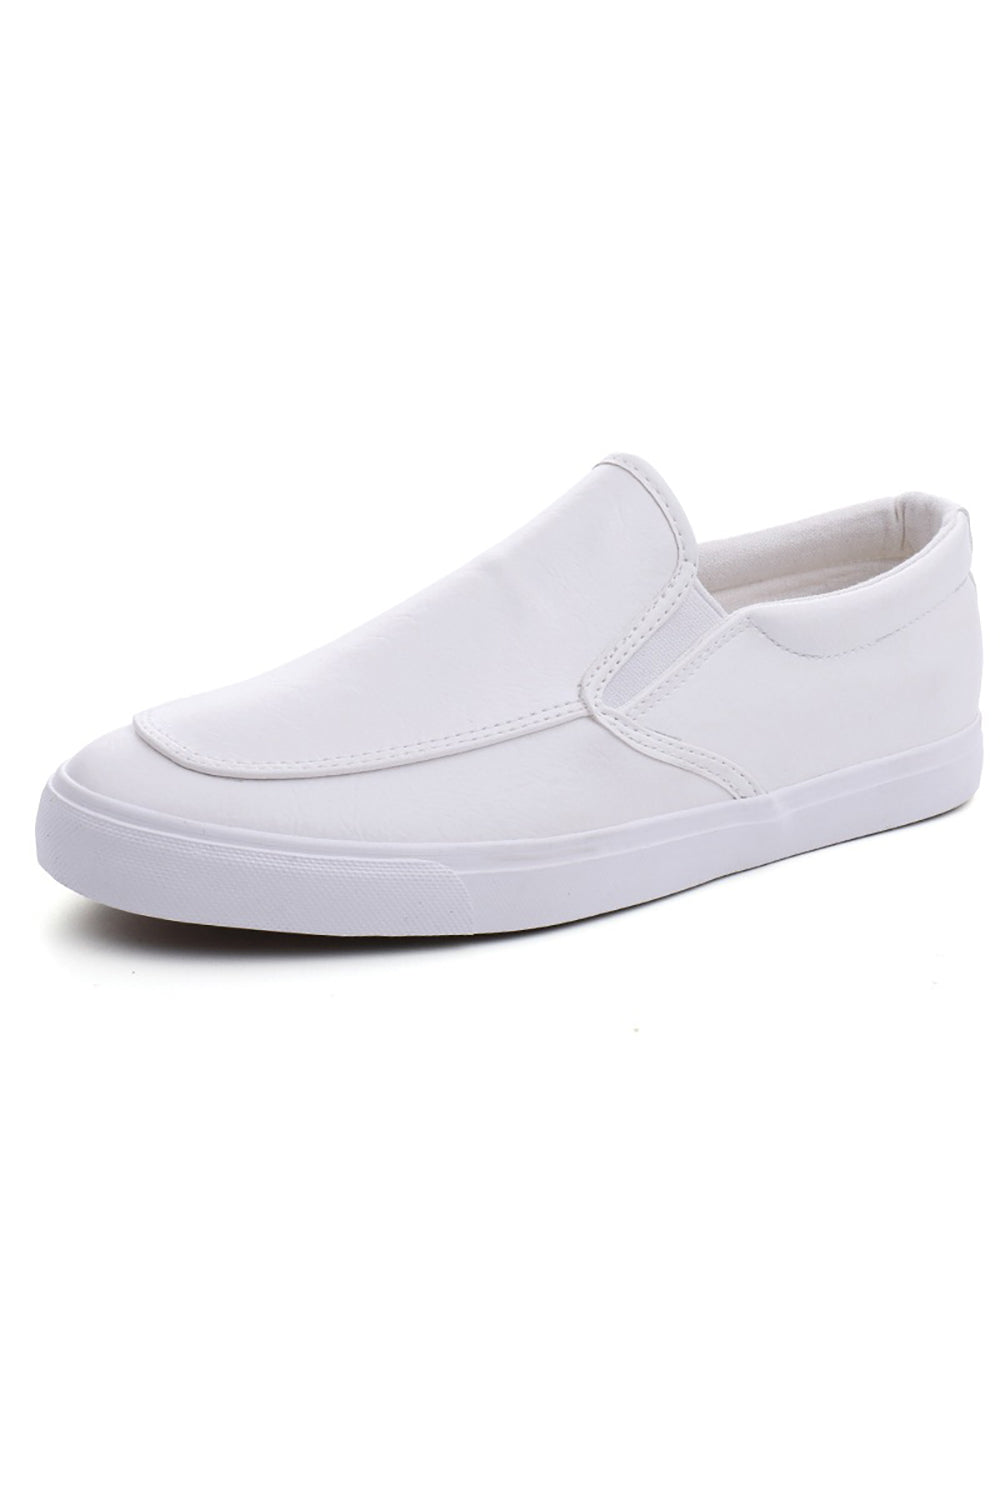 White Slip-on Light Weight Skate Shoes